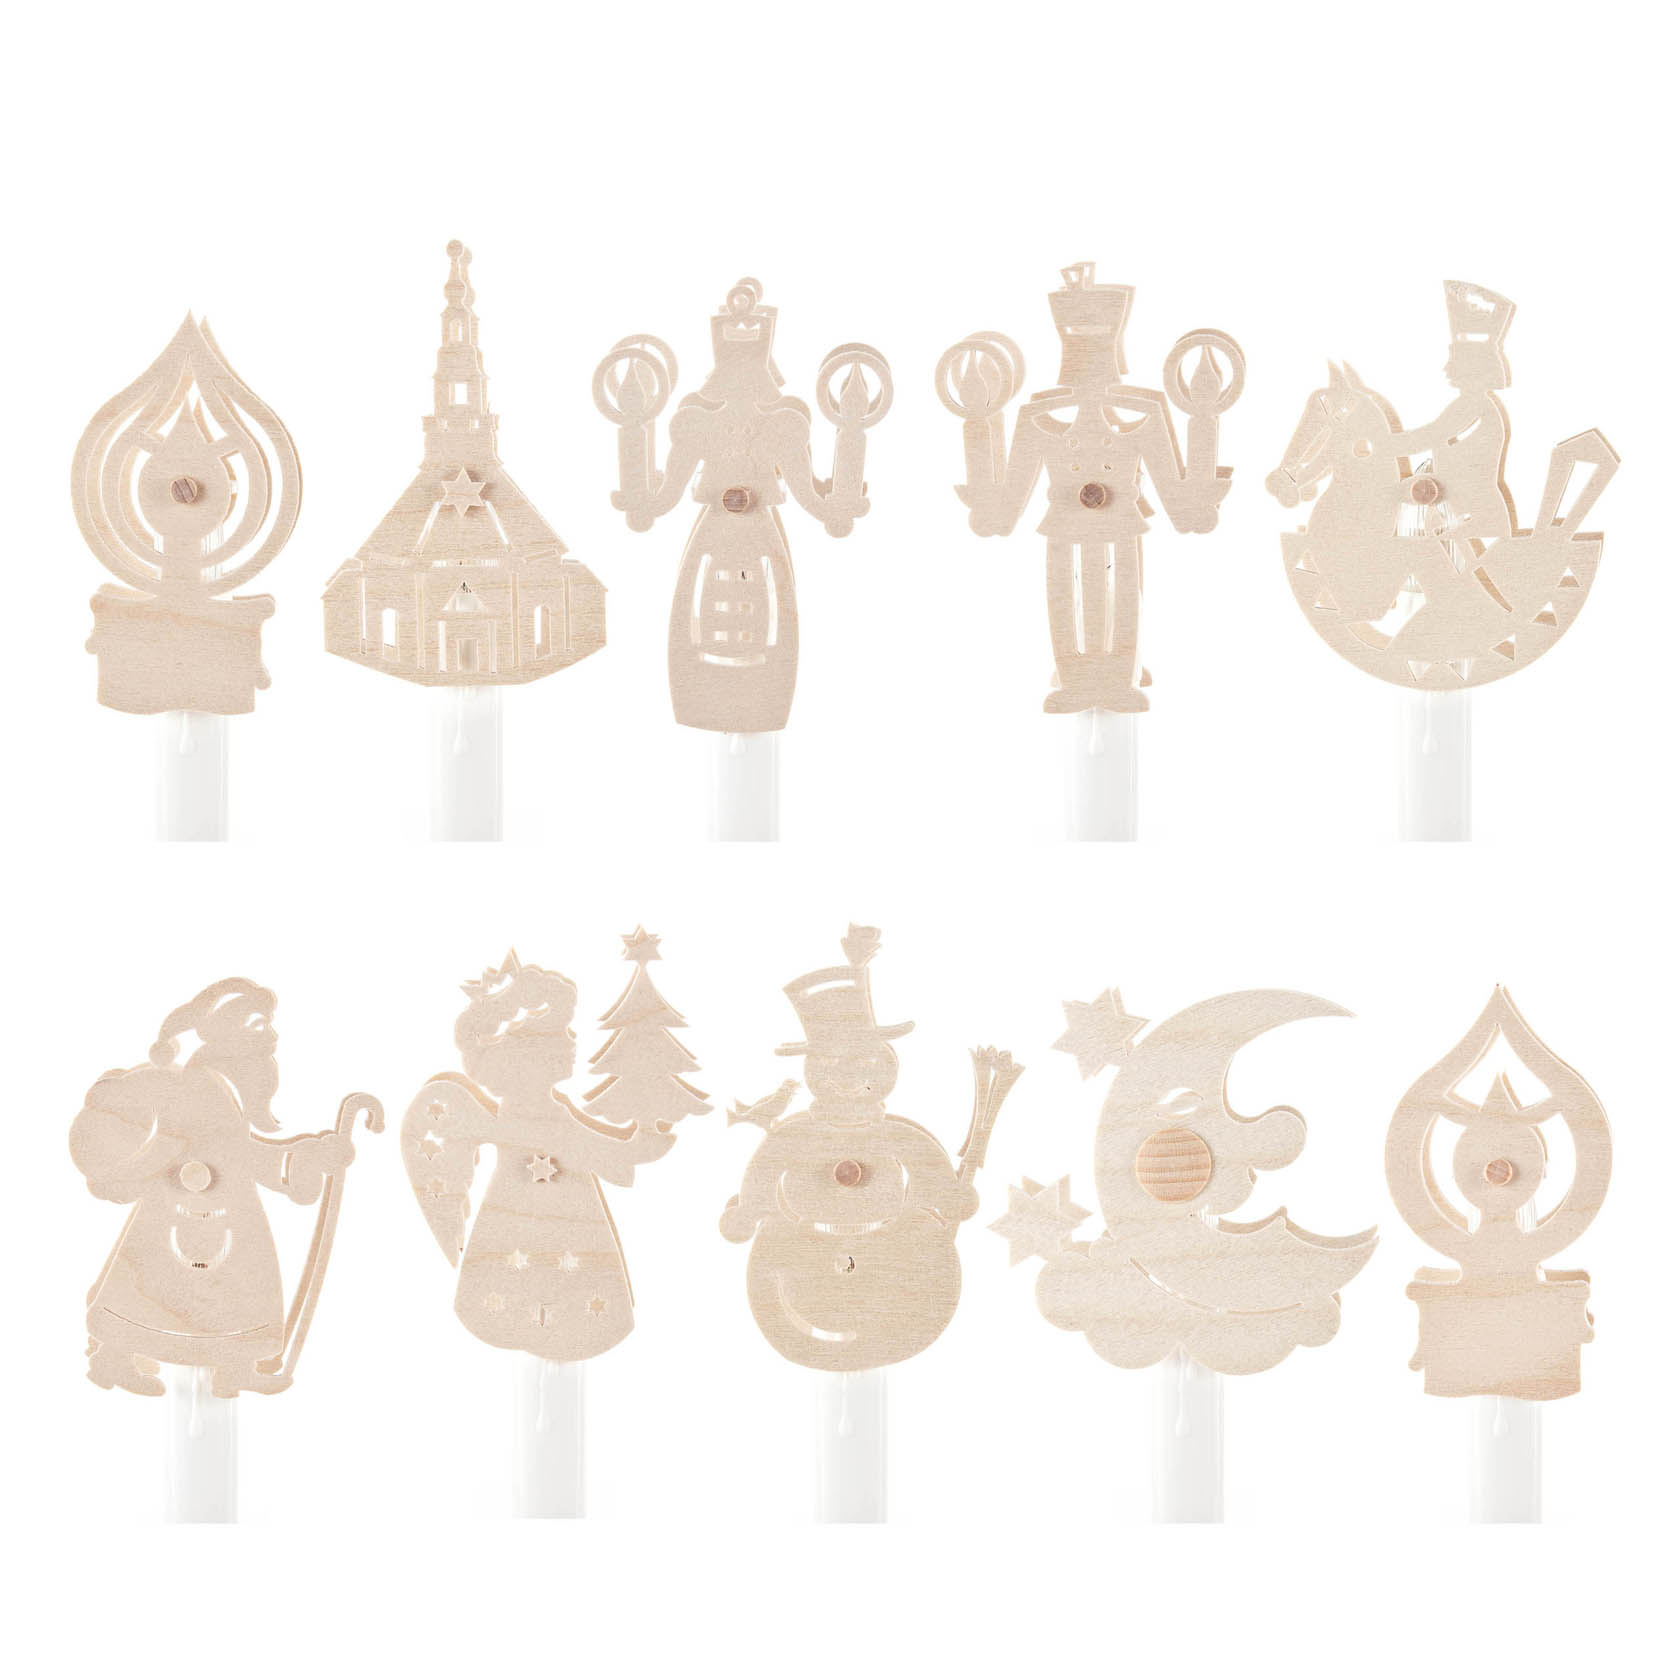 Kerzenaufstecker Erzgebirgsfiguren (10) im Dregeno Online Shop günstig kaufen